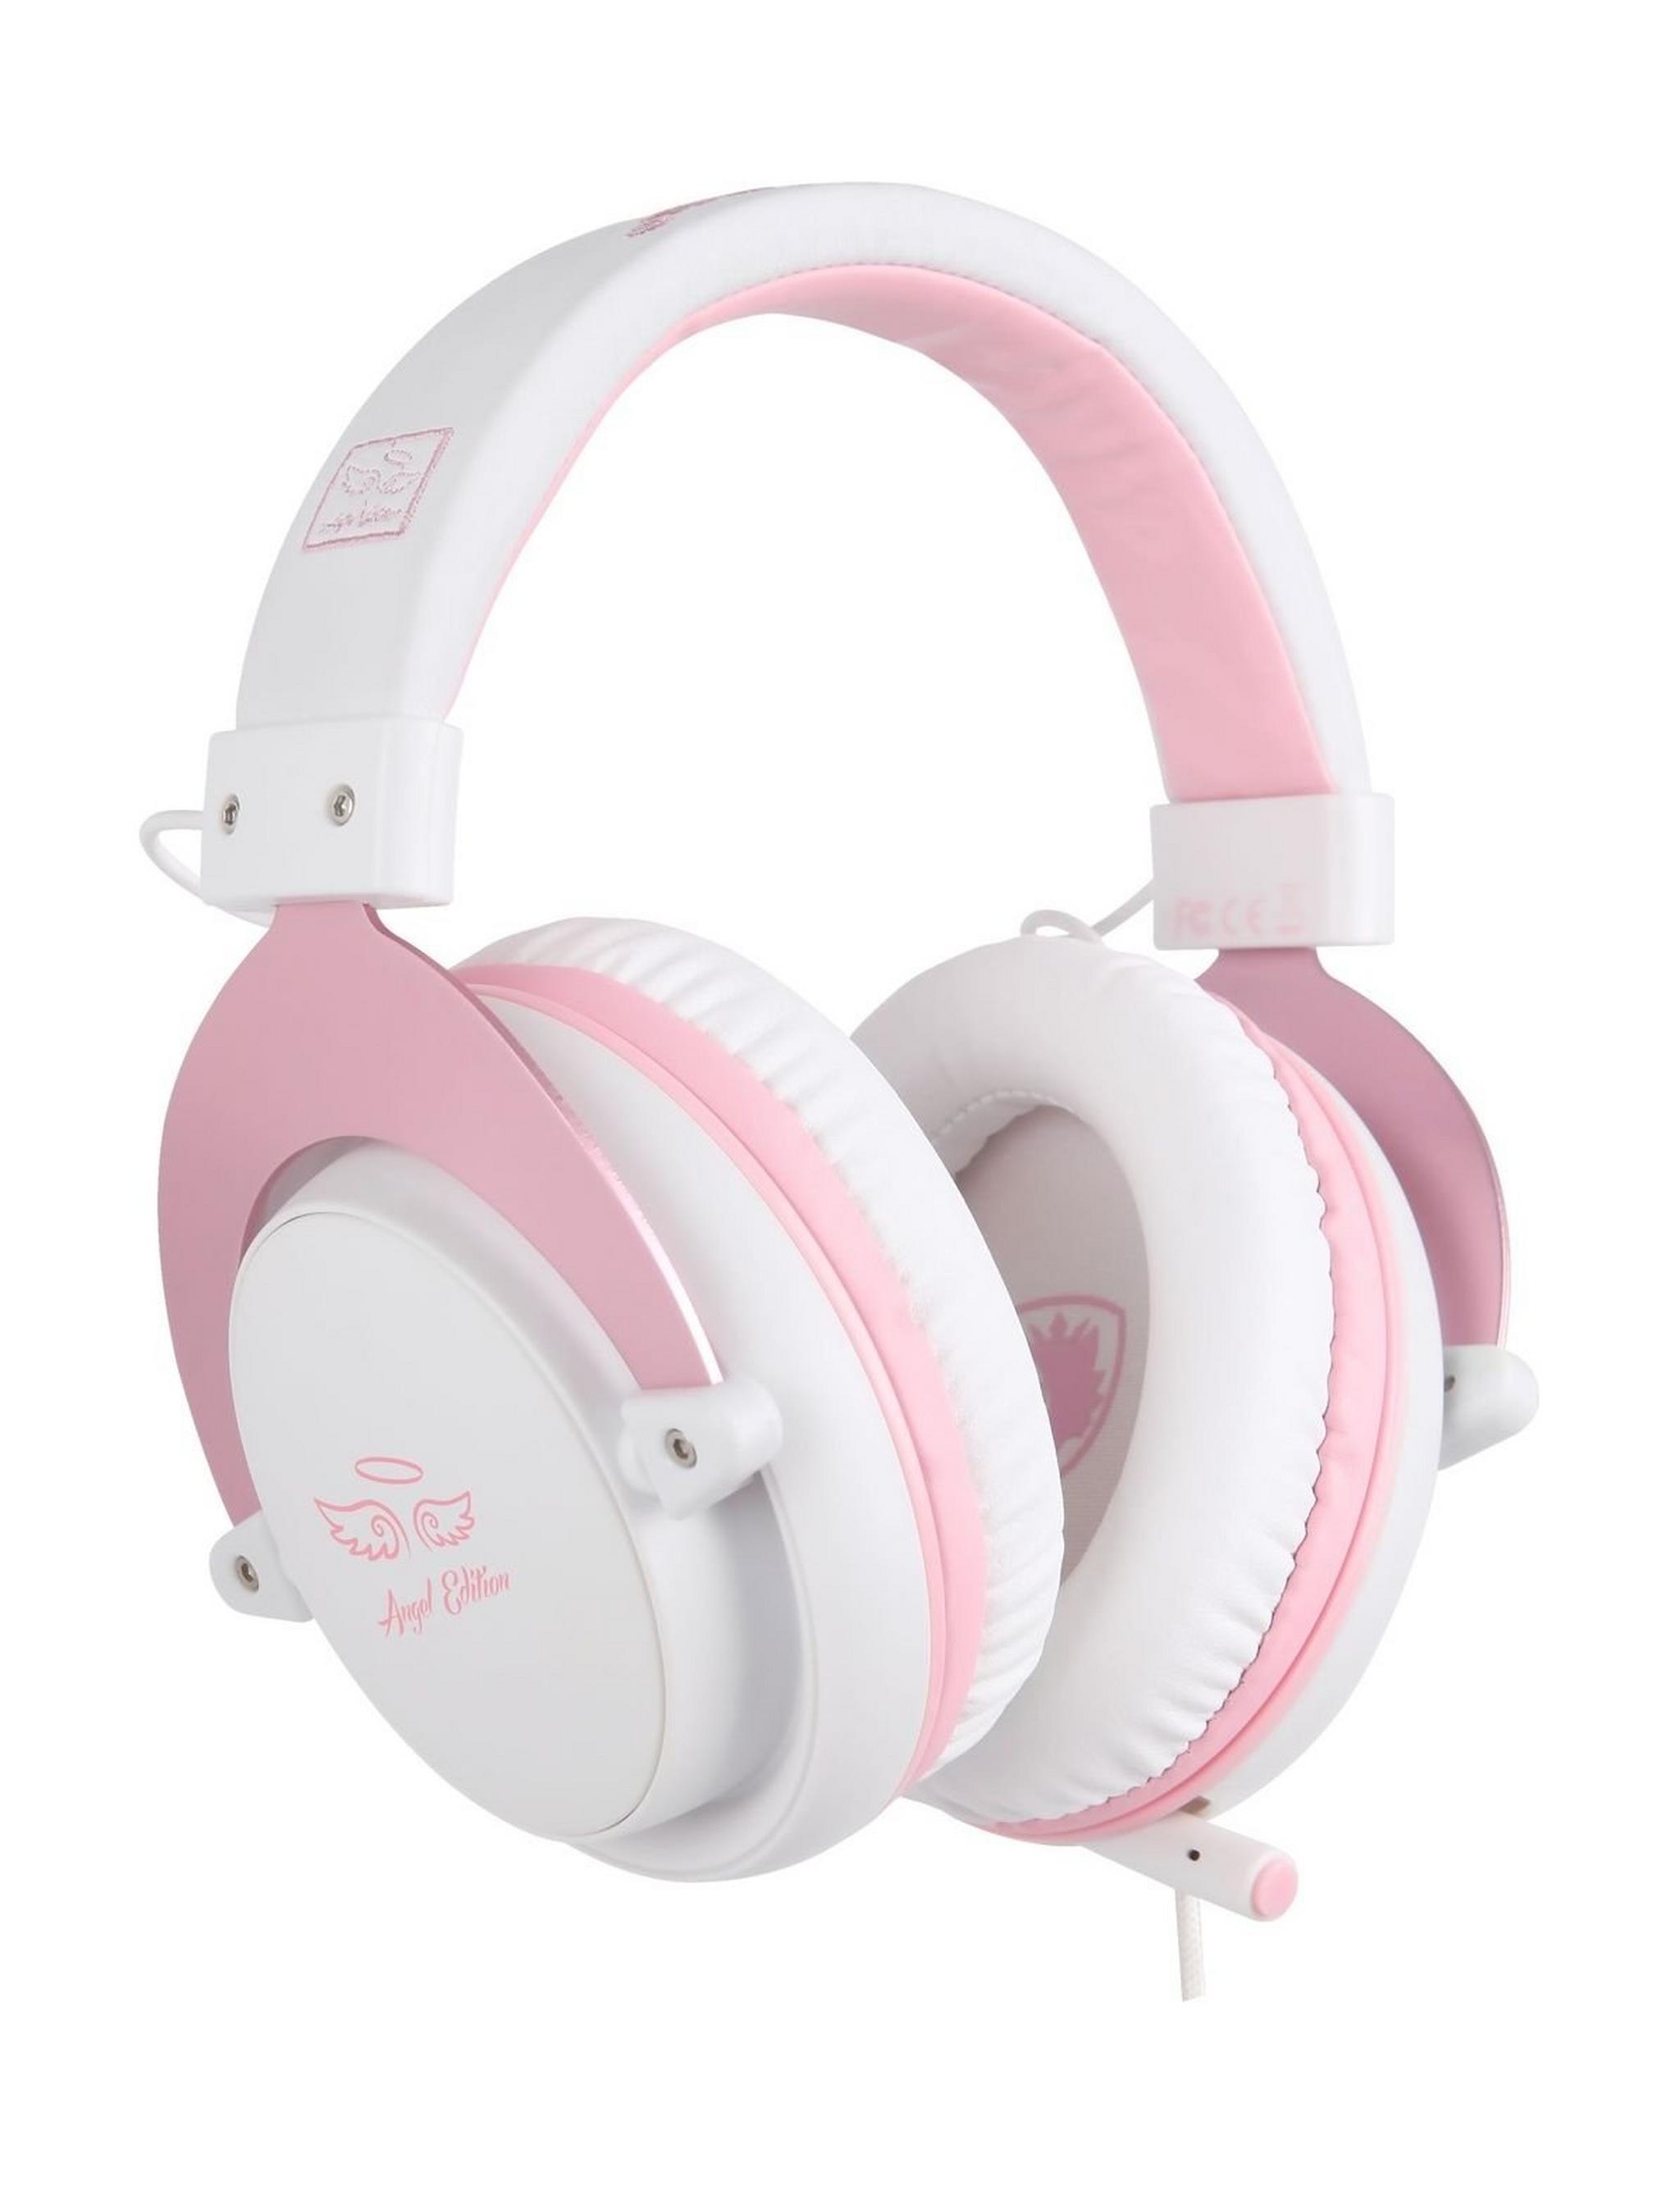 Sades Mpower Gaming Headset - Pink